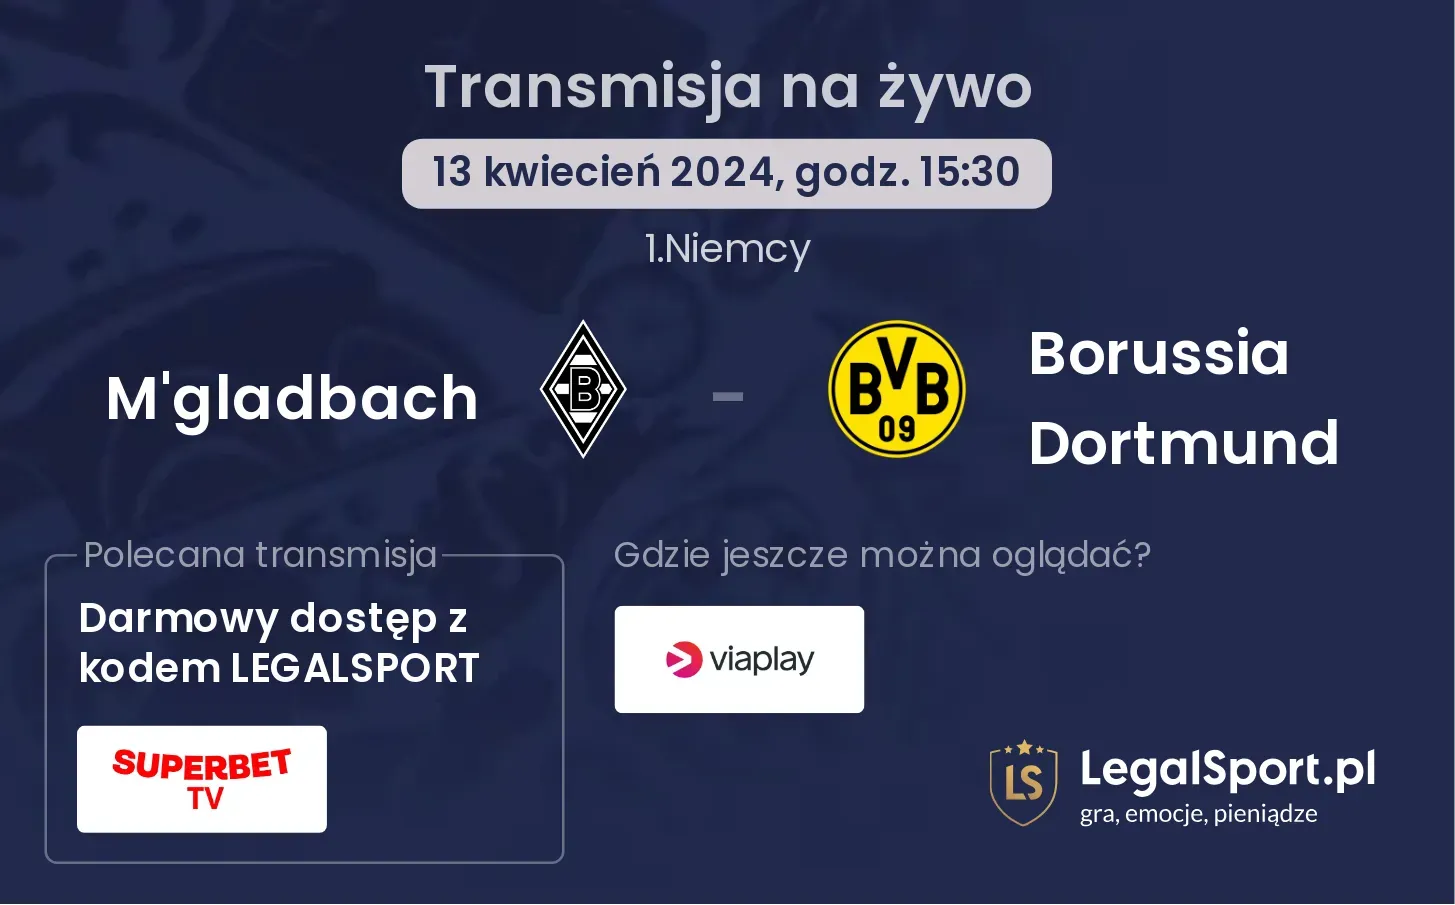 M'gladbach - Borussia Dortmund transmisja na żywo